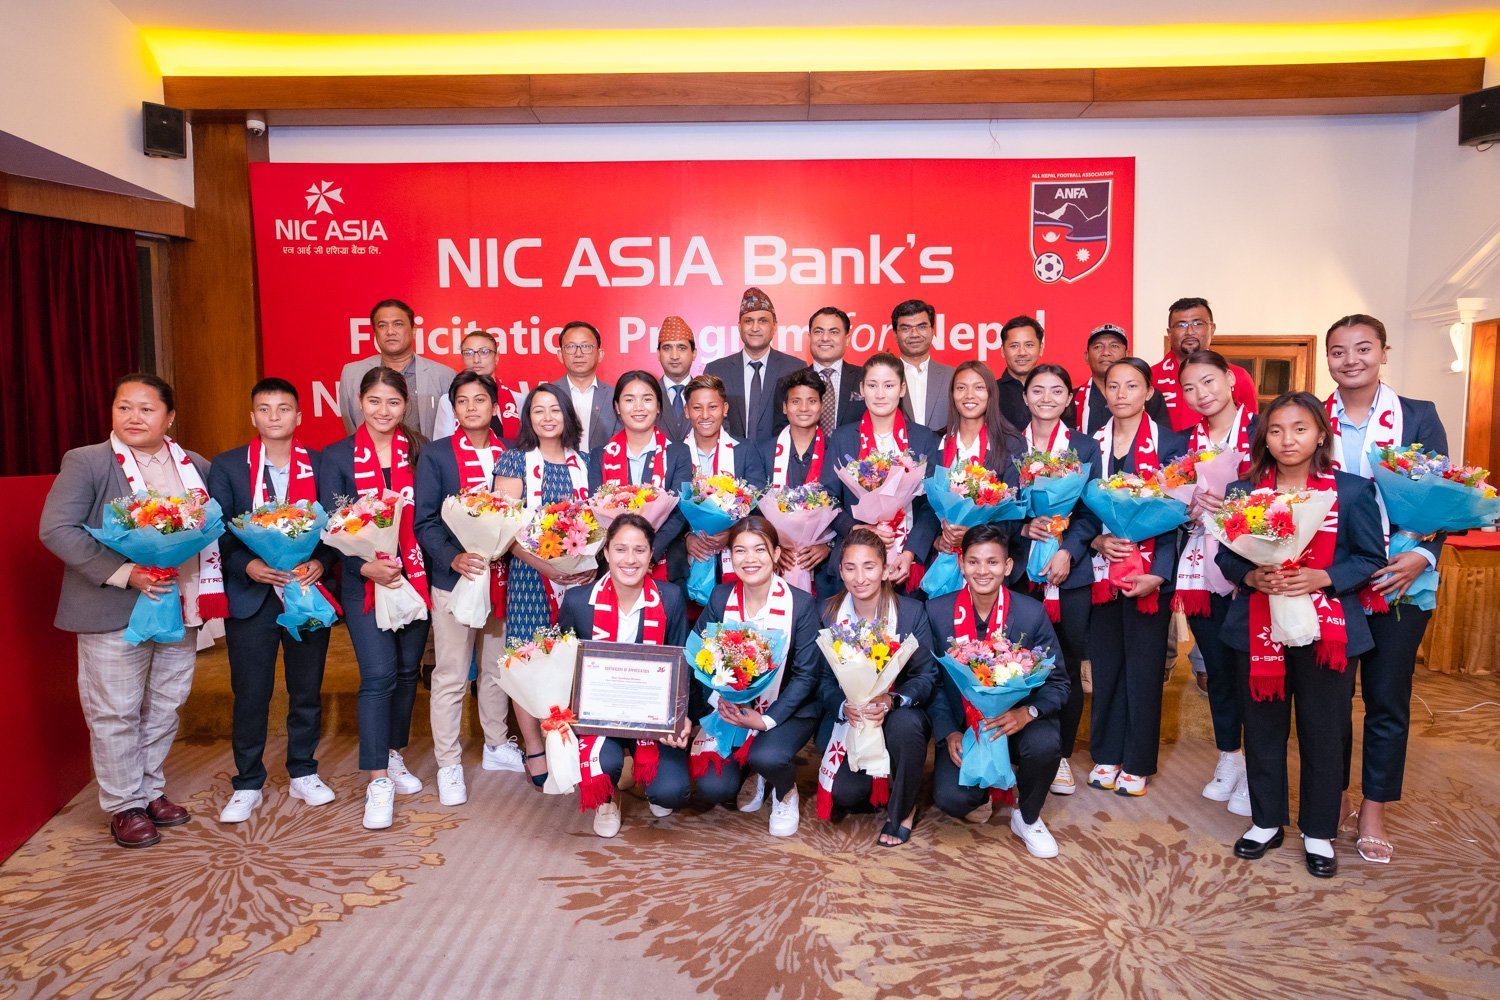 नेपाली महिला फुटबल टोलीलाई एनआईसी एसिया बैंकको सम्मान, अन्जना ब्रान्ड प्रमोटर